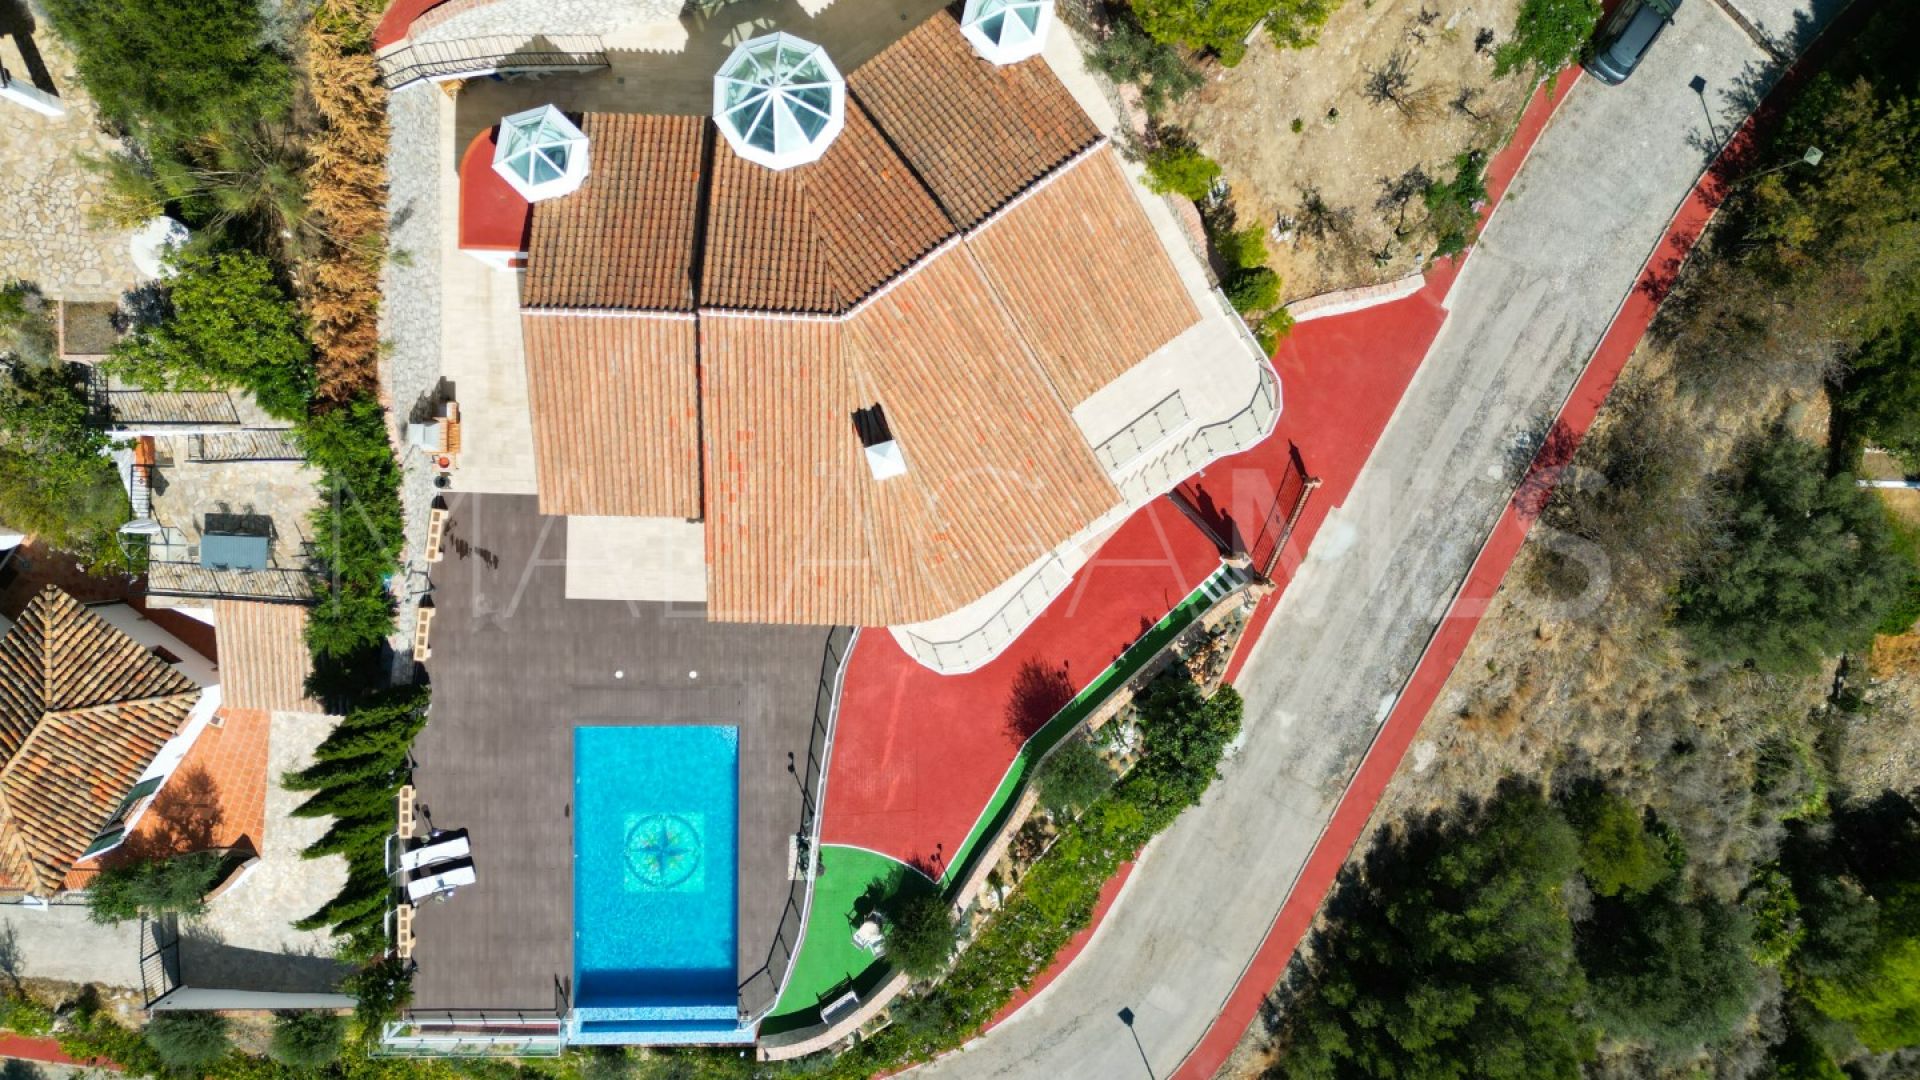 Villa for sale in Valtocado